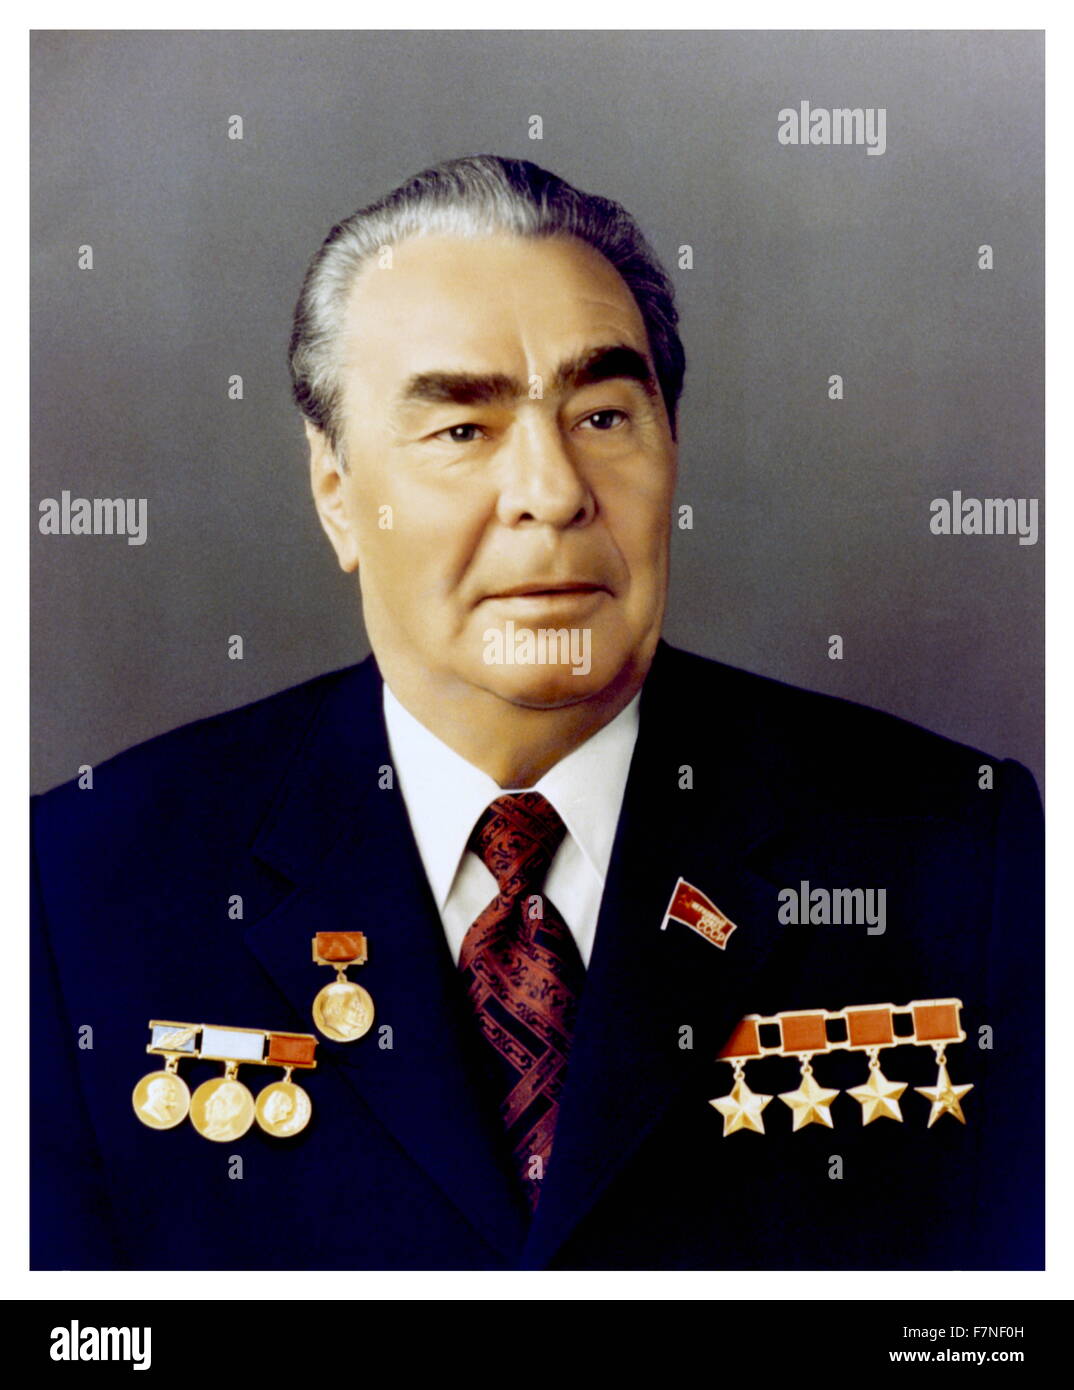 Porträtfotografie von Leonid Brezhnev (1906-1982) der Generalsekretär des Zentralkomitees der kommunistischen Partei der Sowjetunion. Datiert 1964 Stockfoto